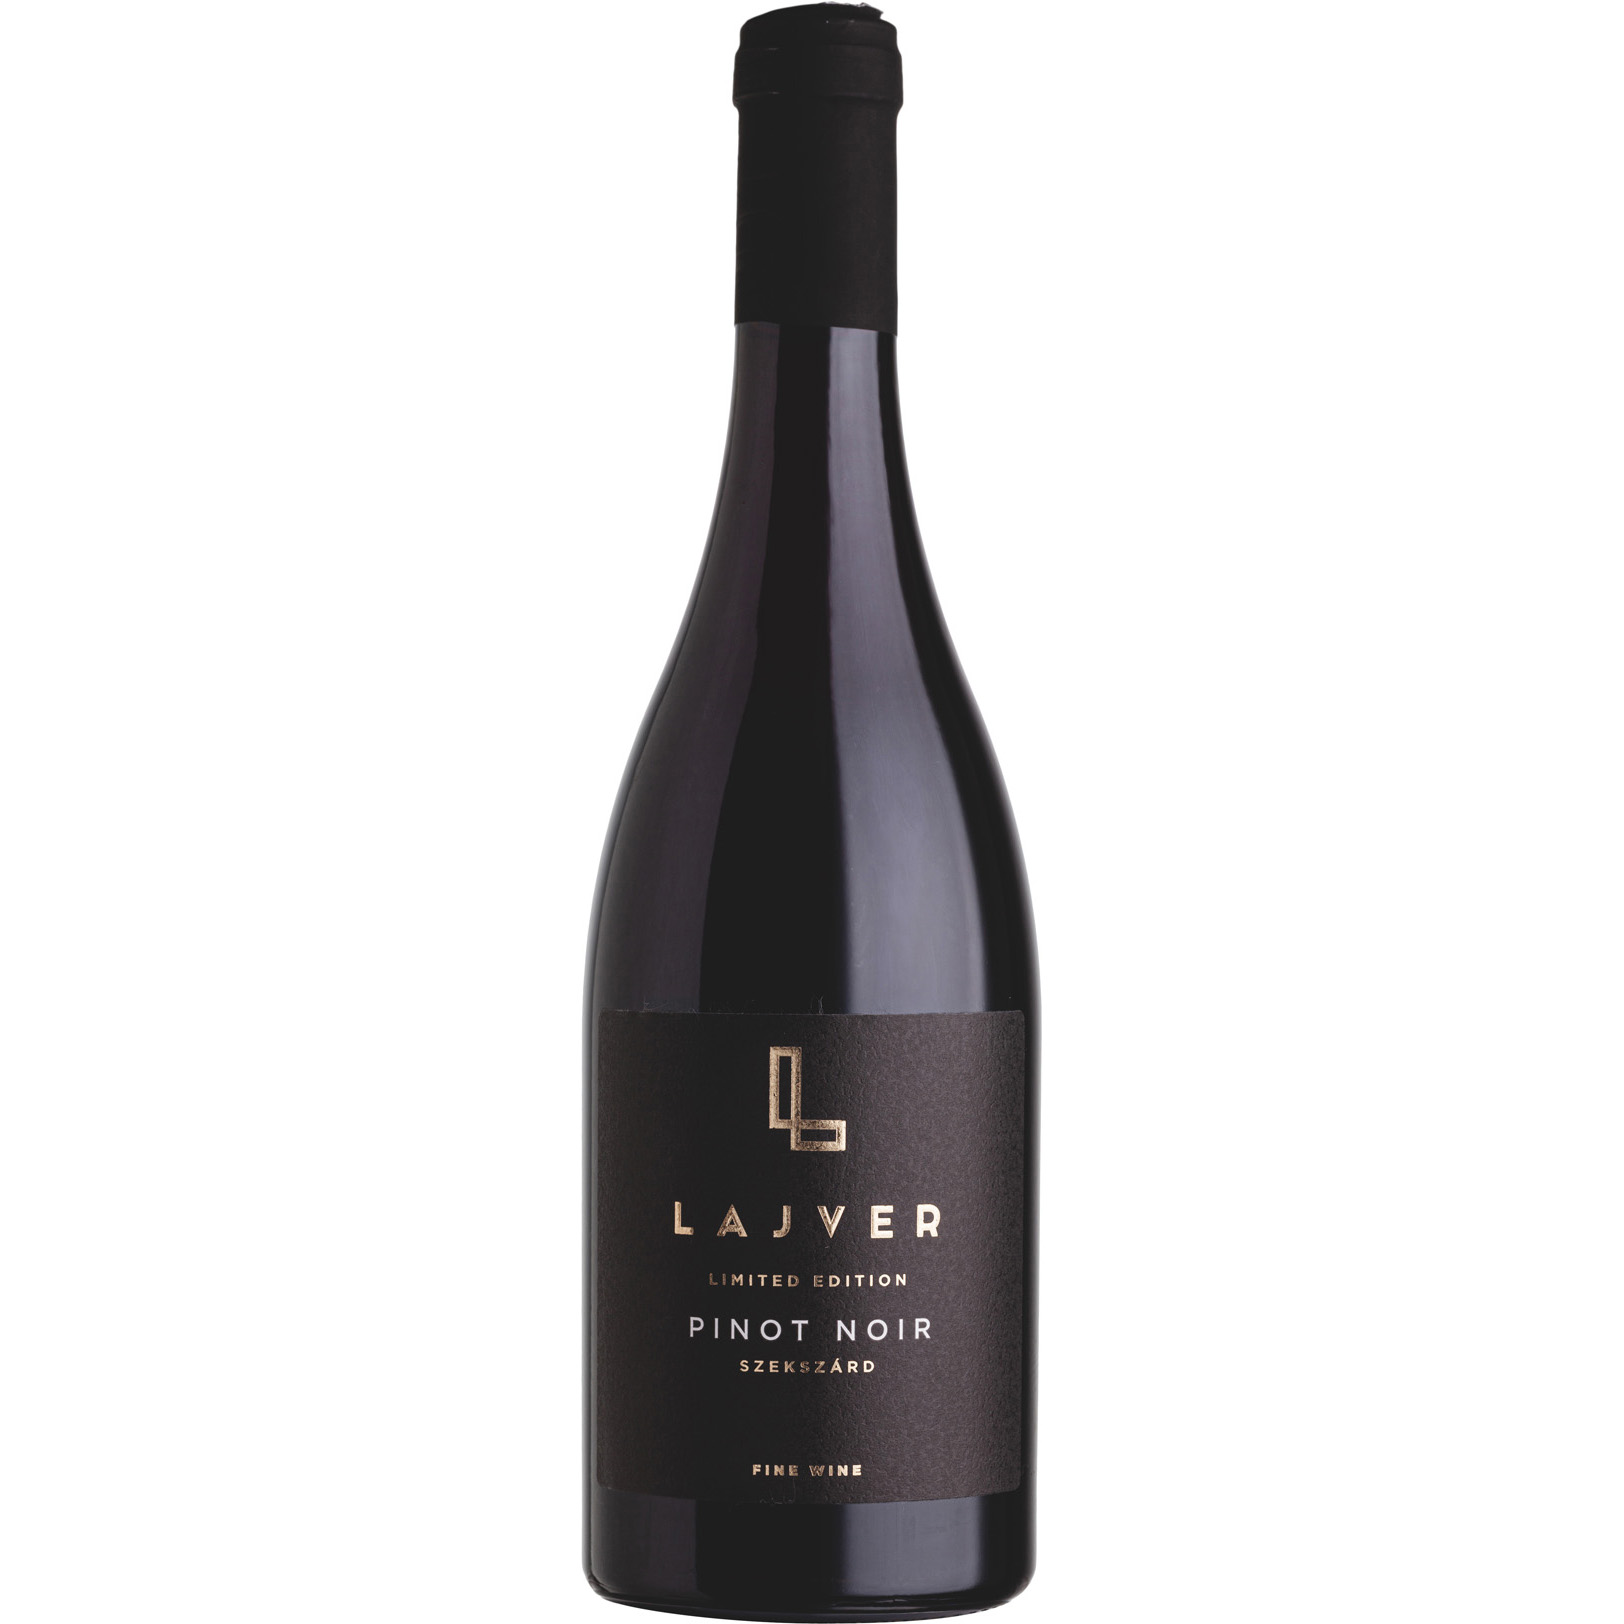 Lajvér Pinot noir Limited